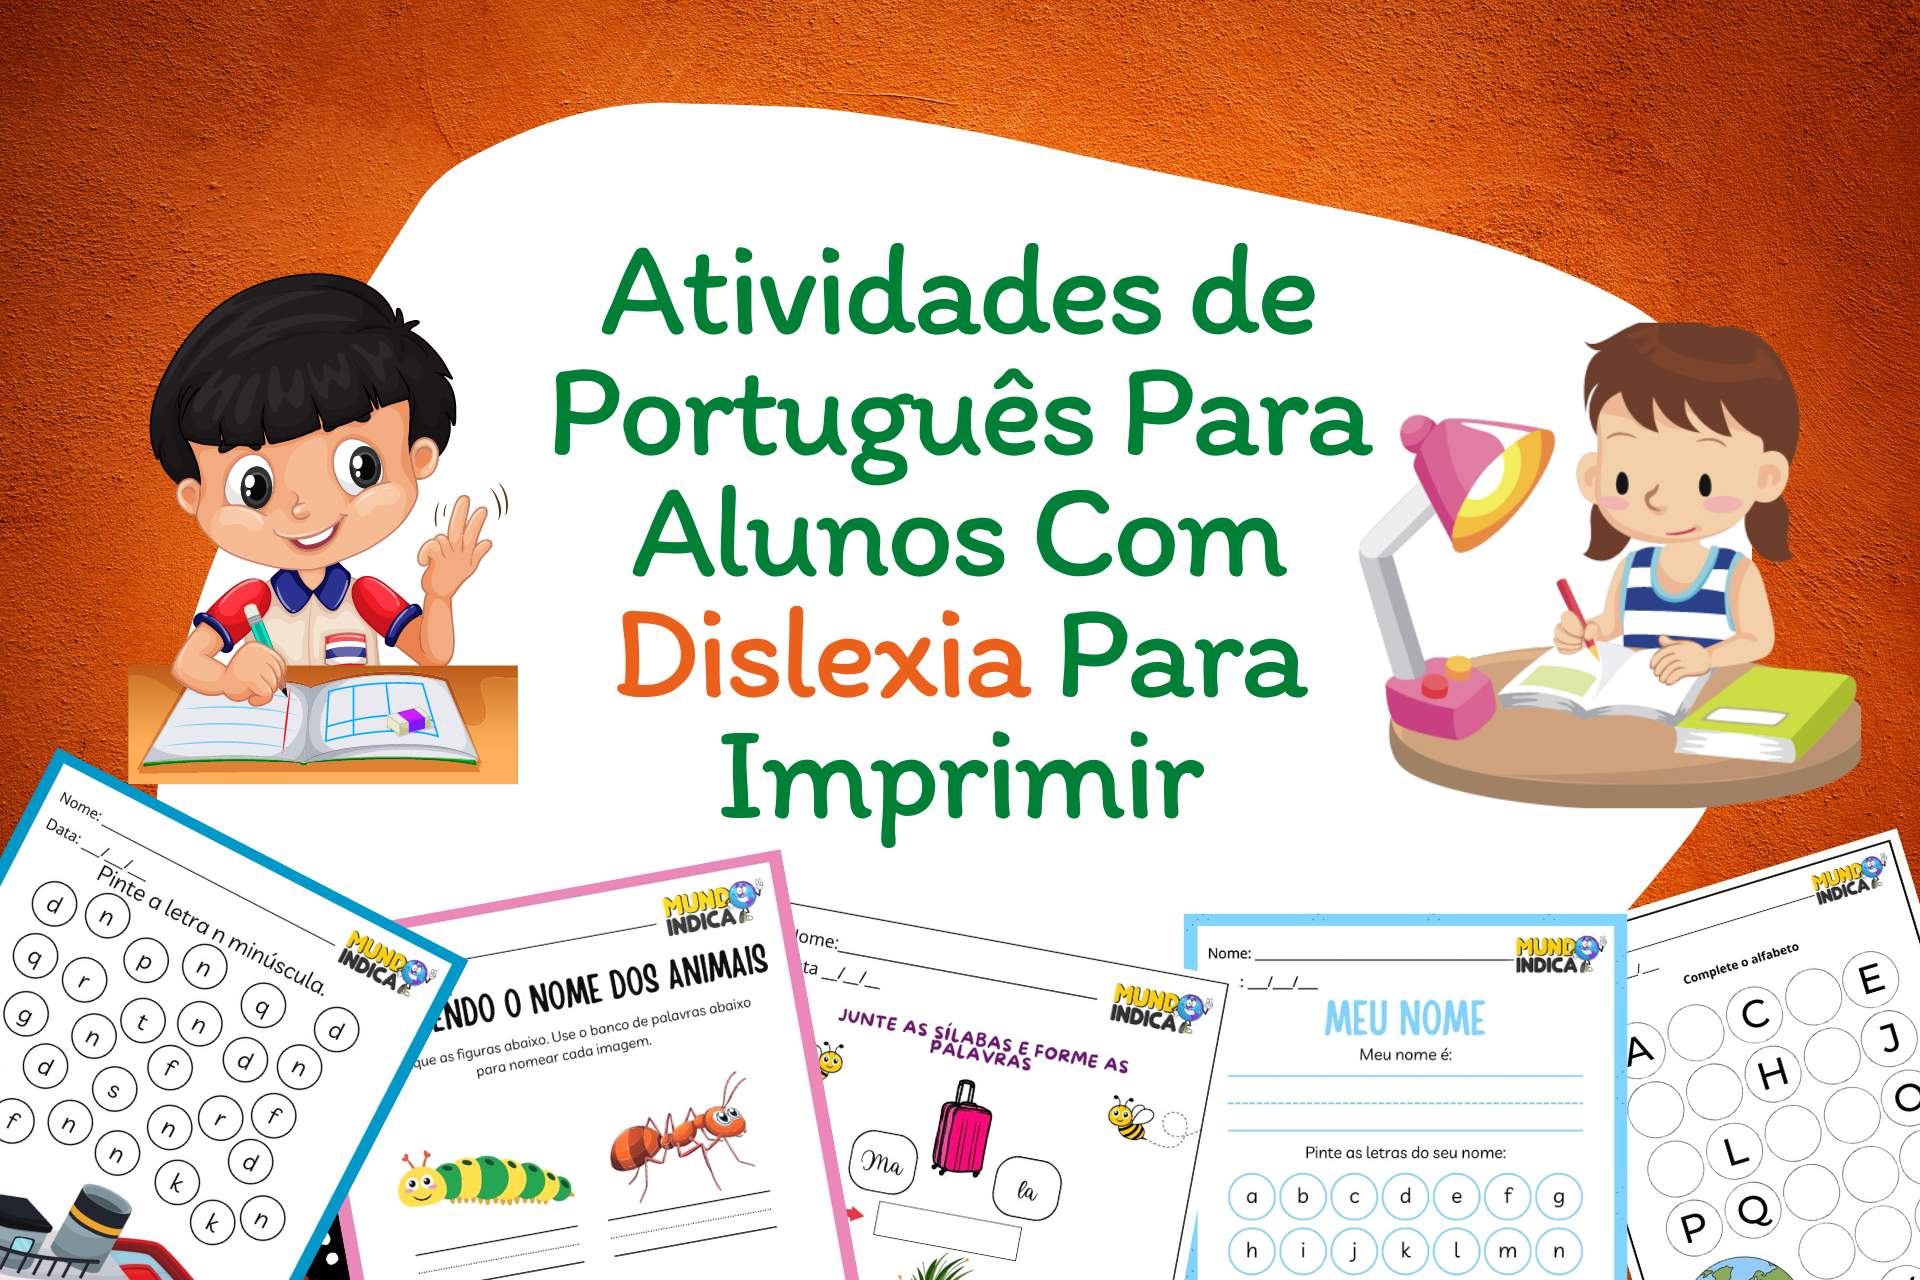 Atividades de Português para Alunos com Dislexia para imprimir